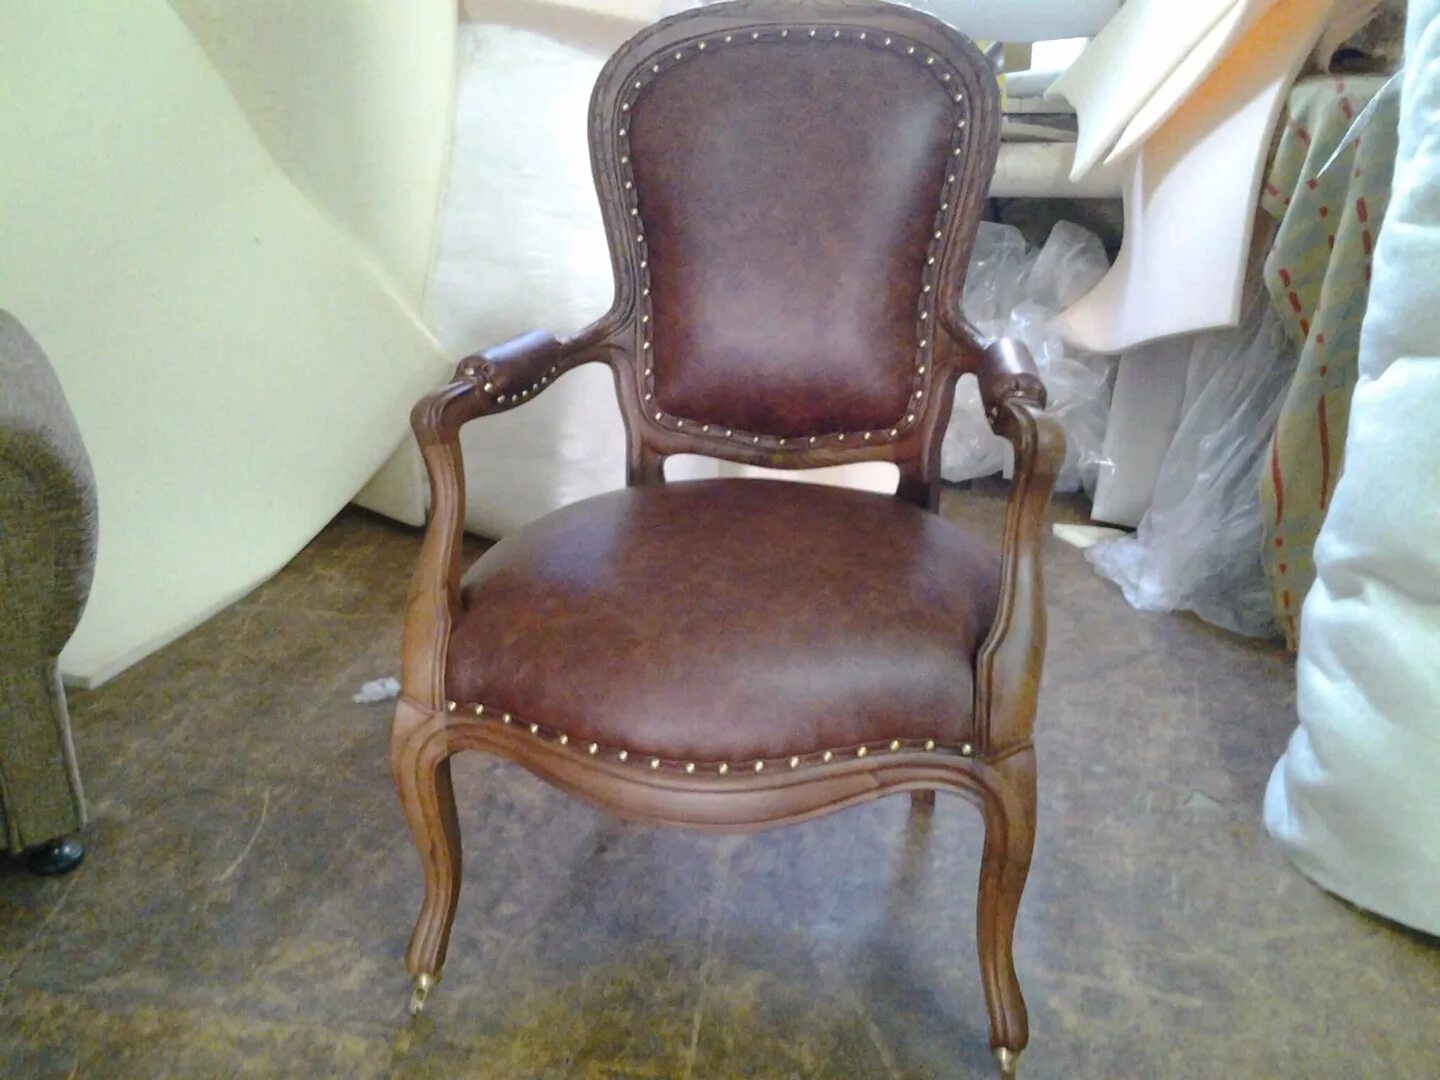 Обивка стула кожей. Кожаный стул старый. Обивка кресла кожей. Старинные стулья обтянуты кожей. Старые кожаные кресла.